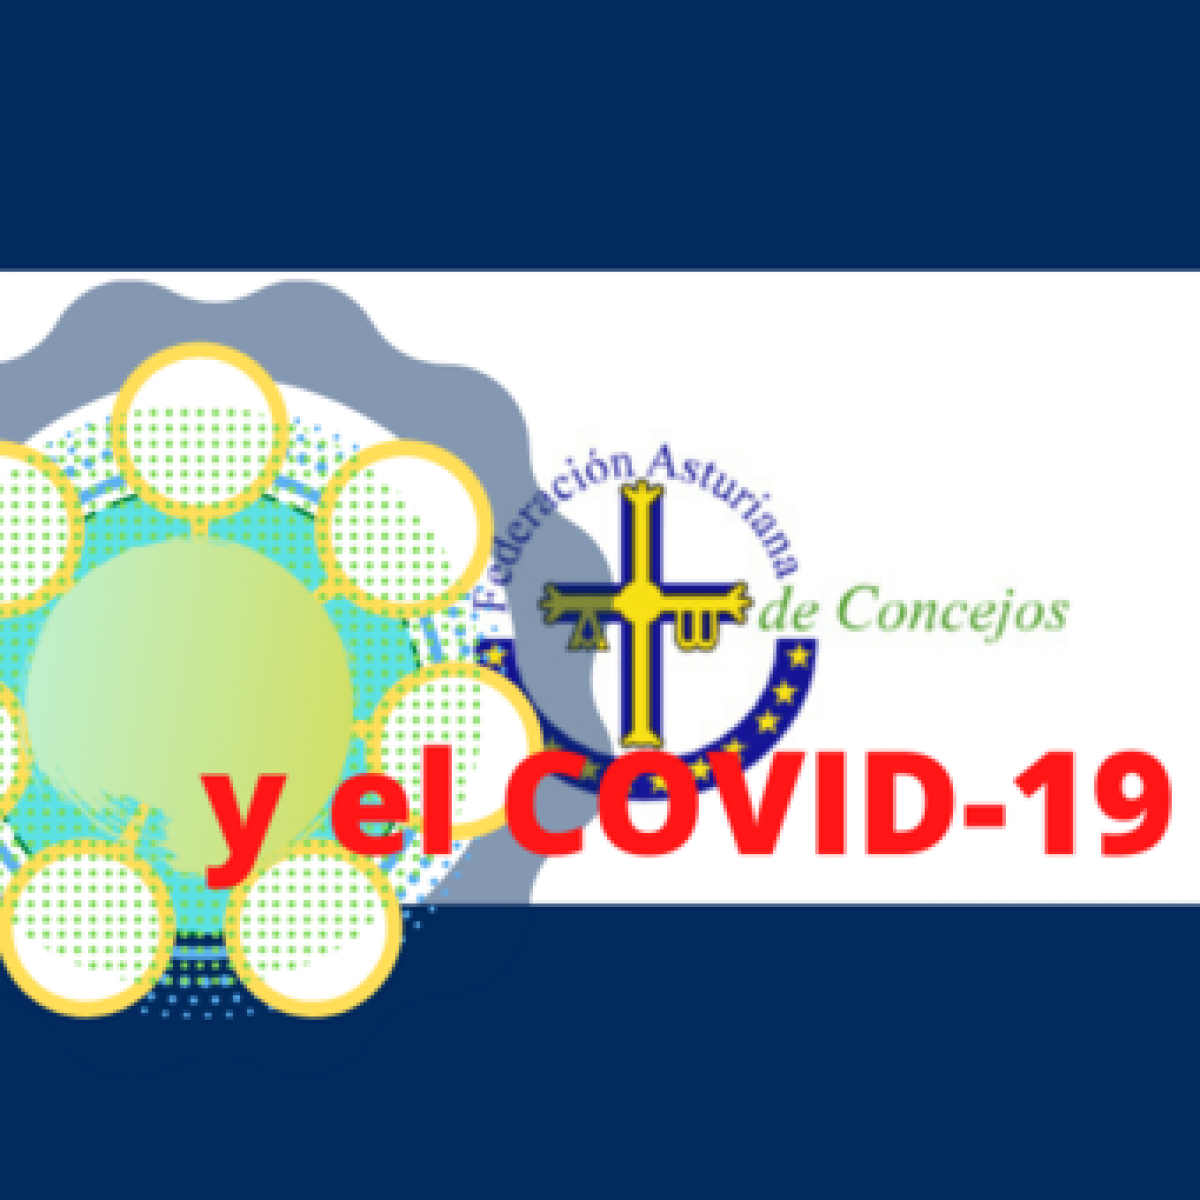 Federación Asturiana de Concejos y el covid-19